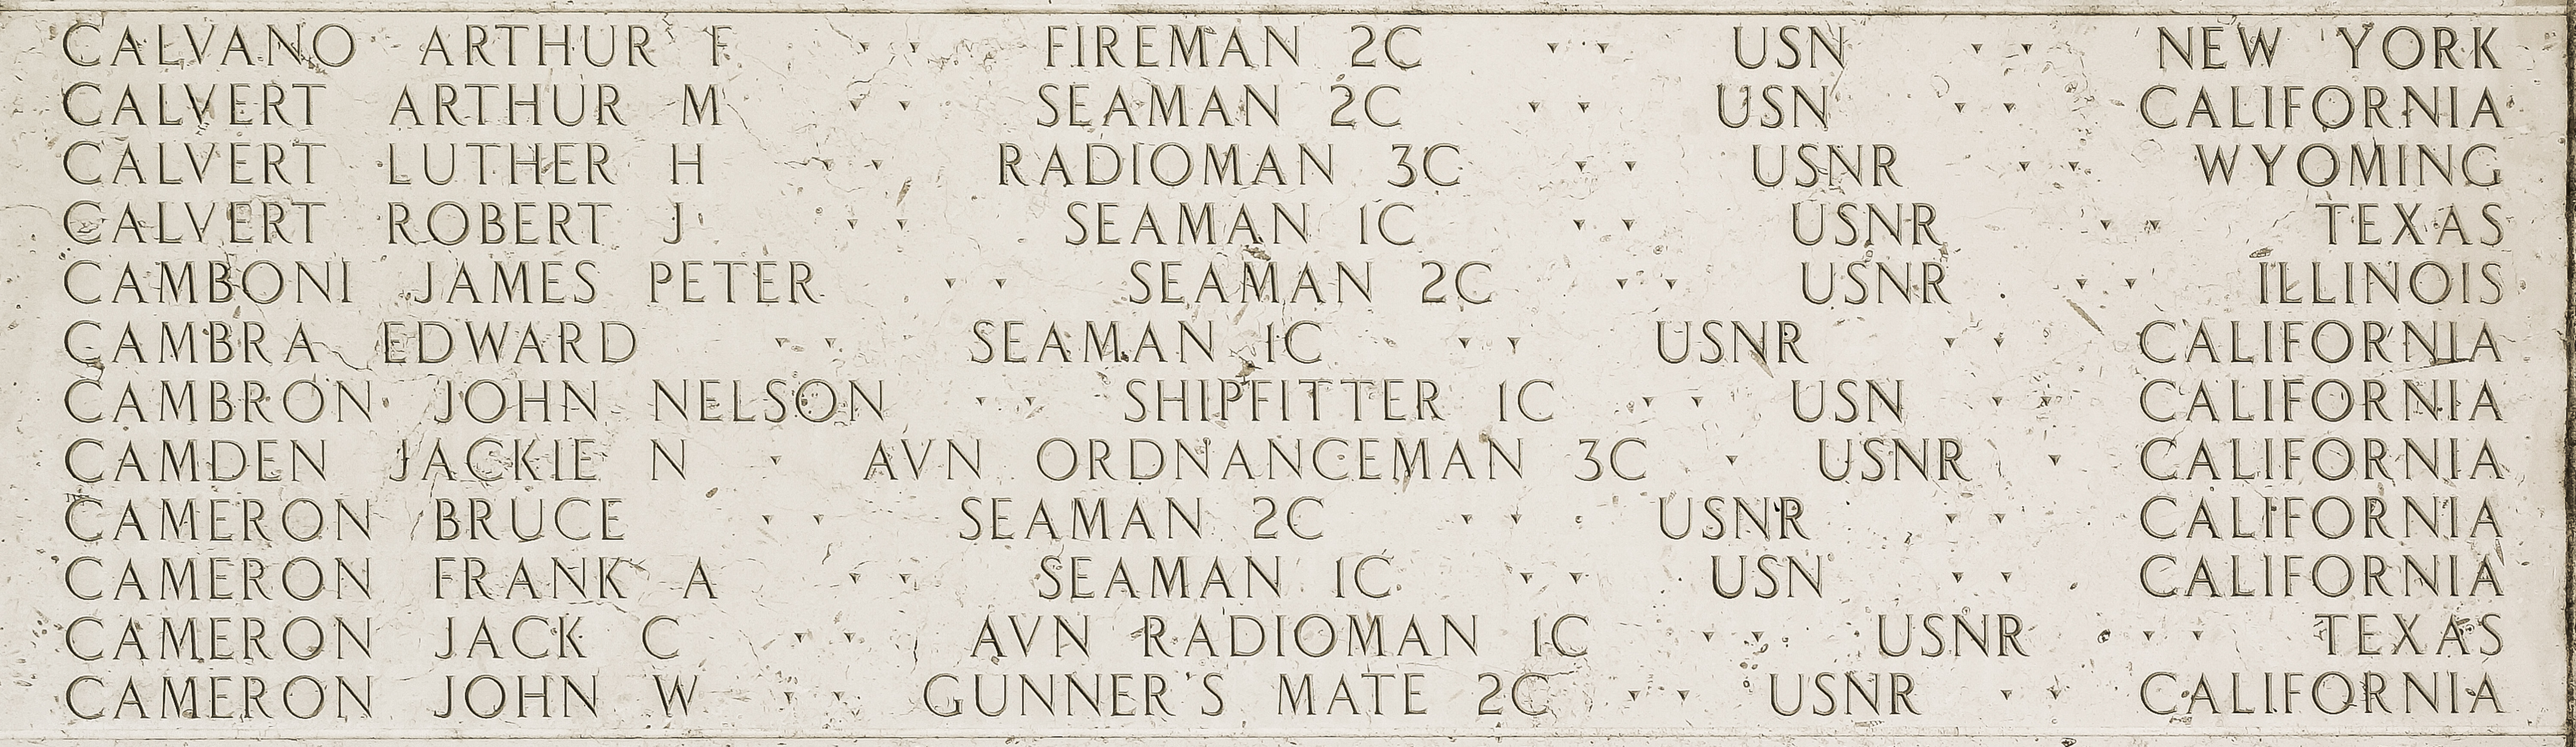 James Peter Camboni, Seaman Second Class